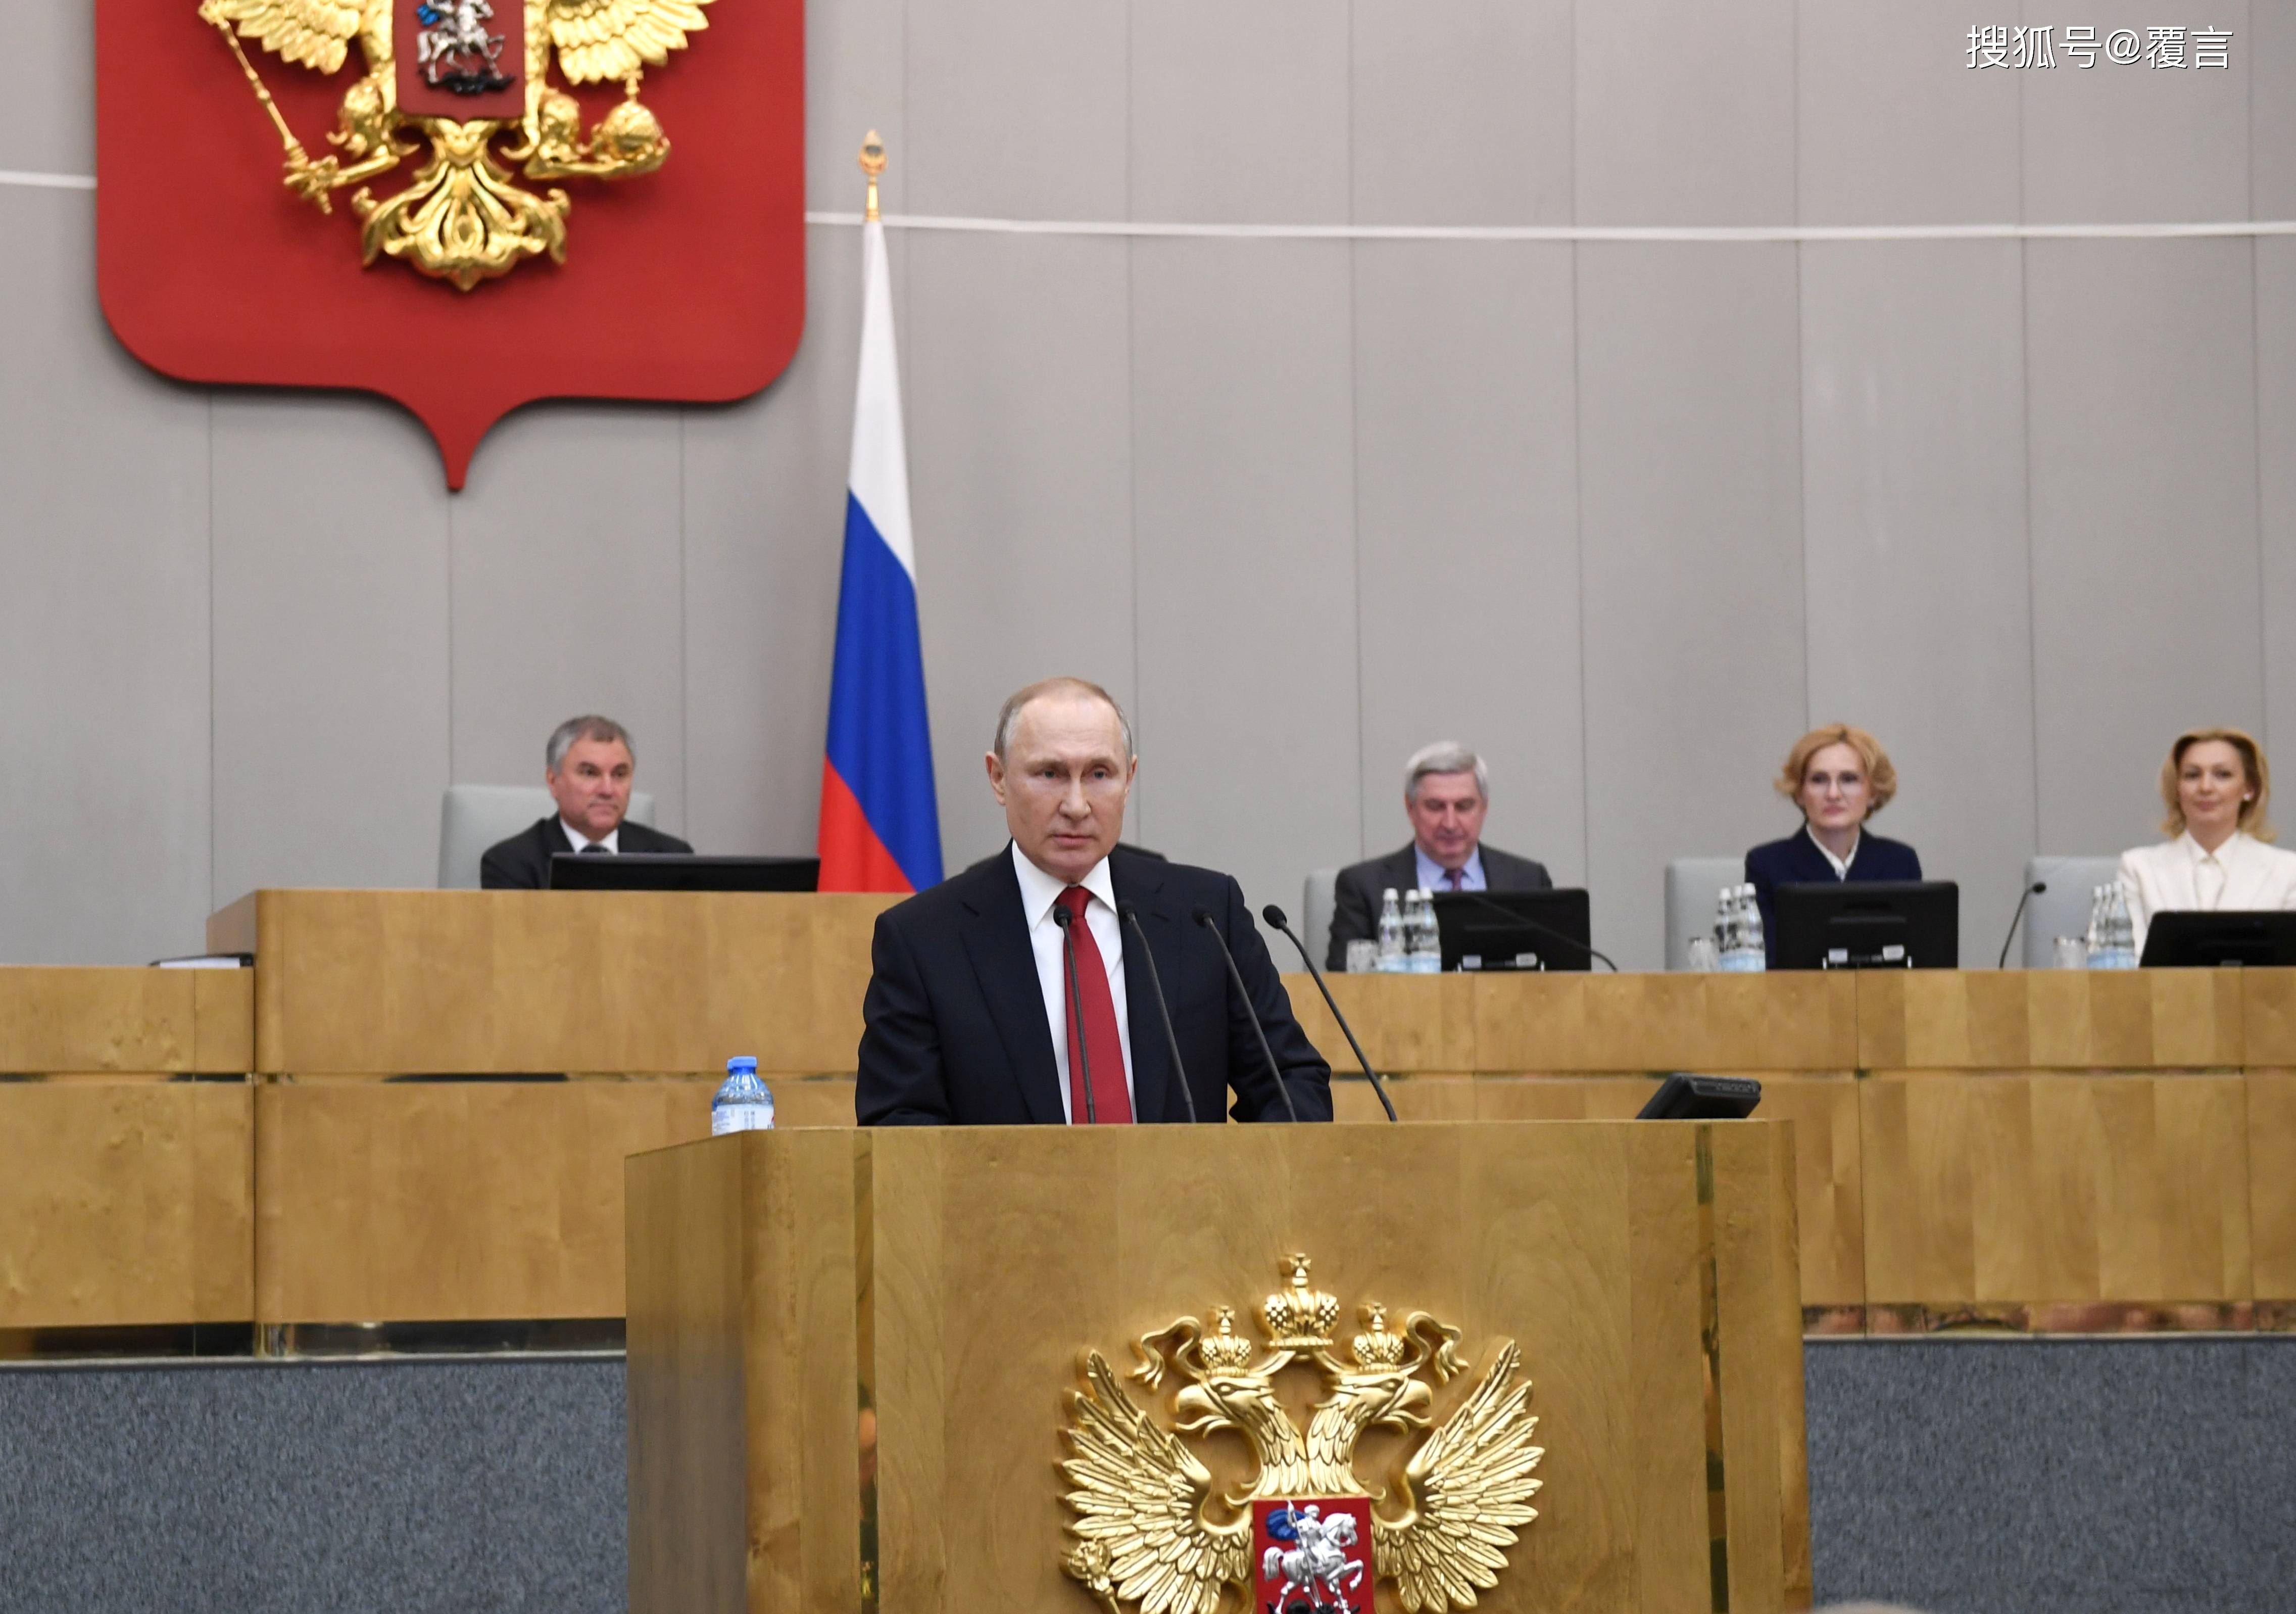 俄政府在总统就职典礼日将辞职 - 2018年5月7日, 俄罗斯卫星通讯社